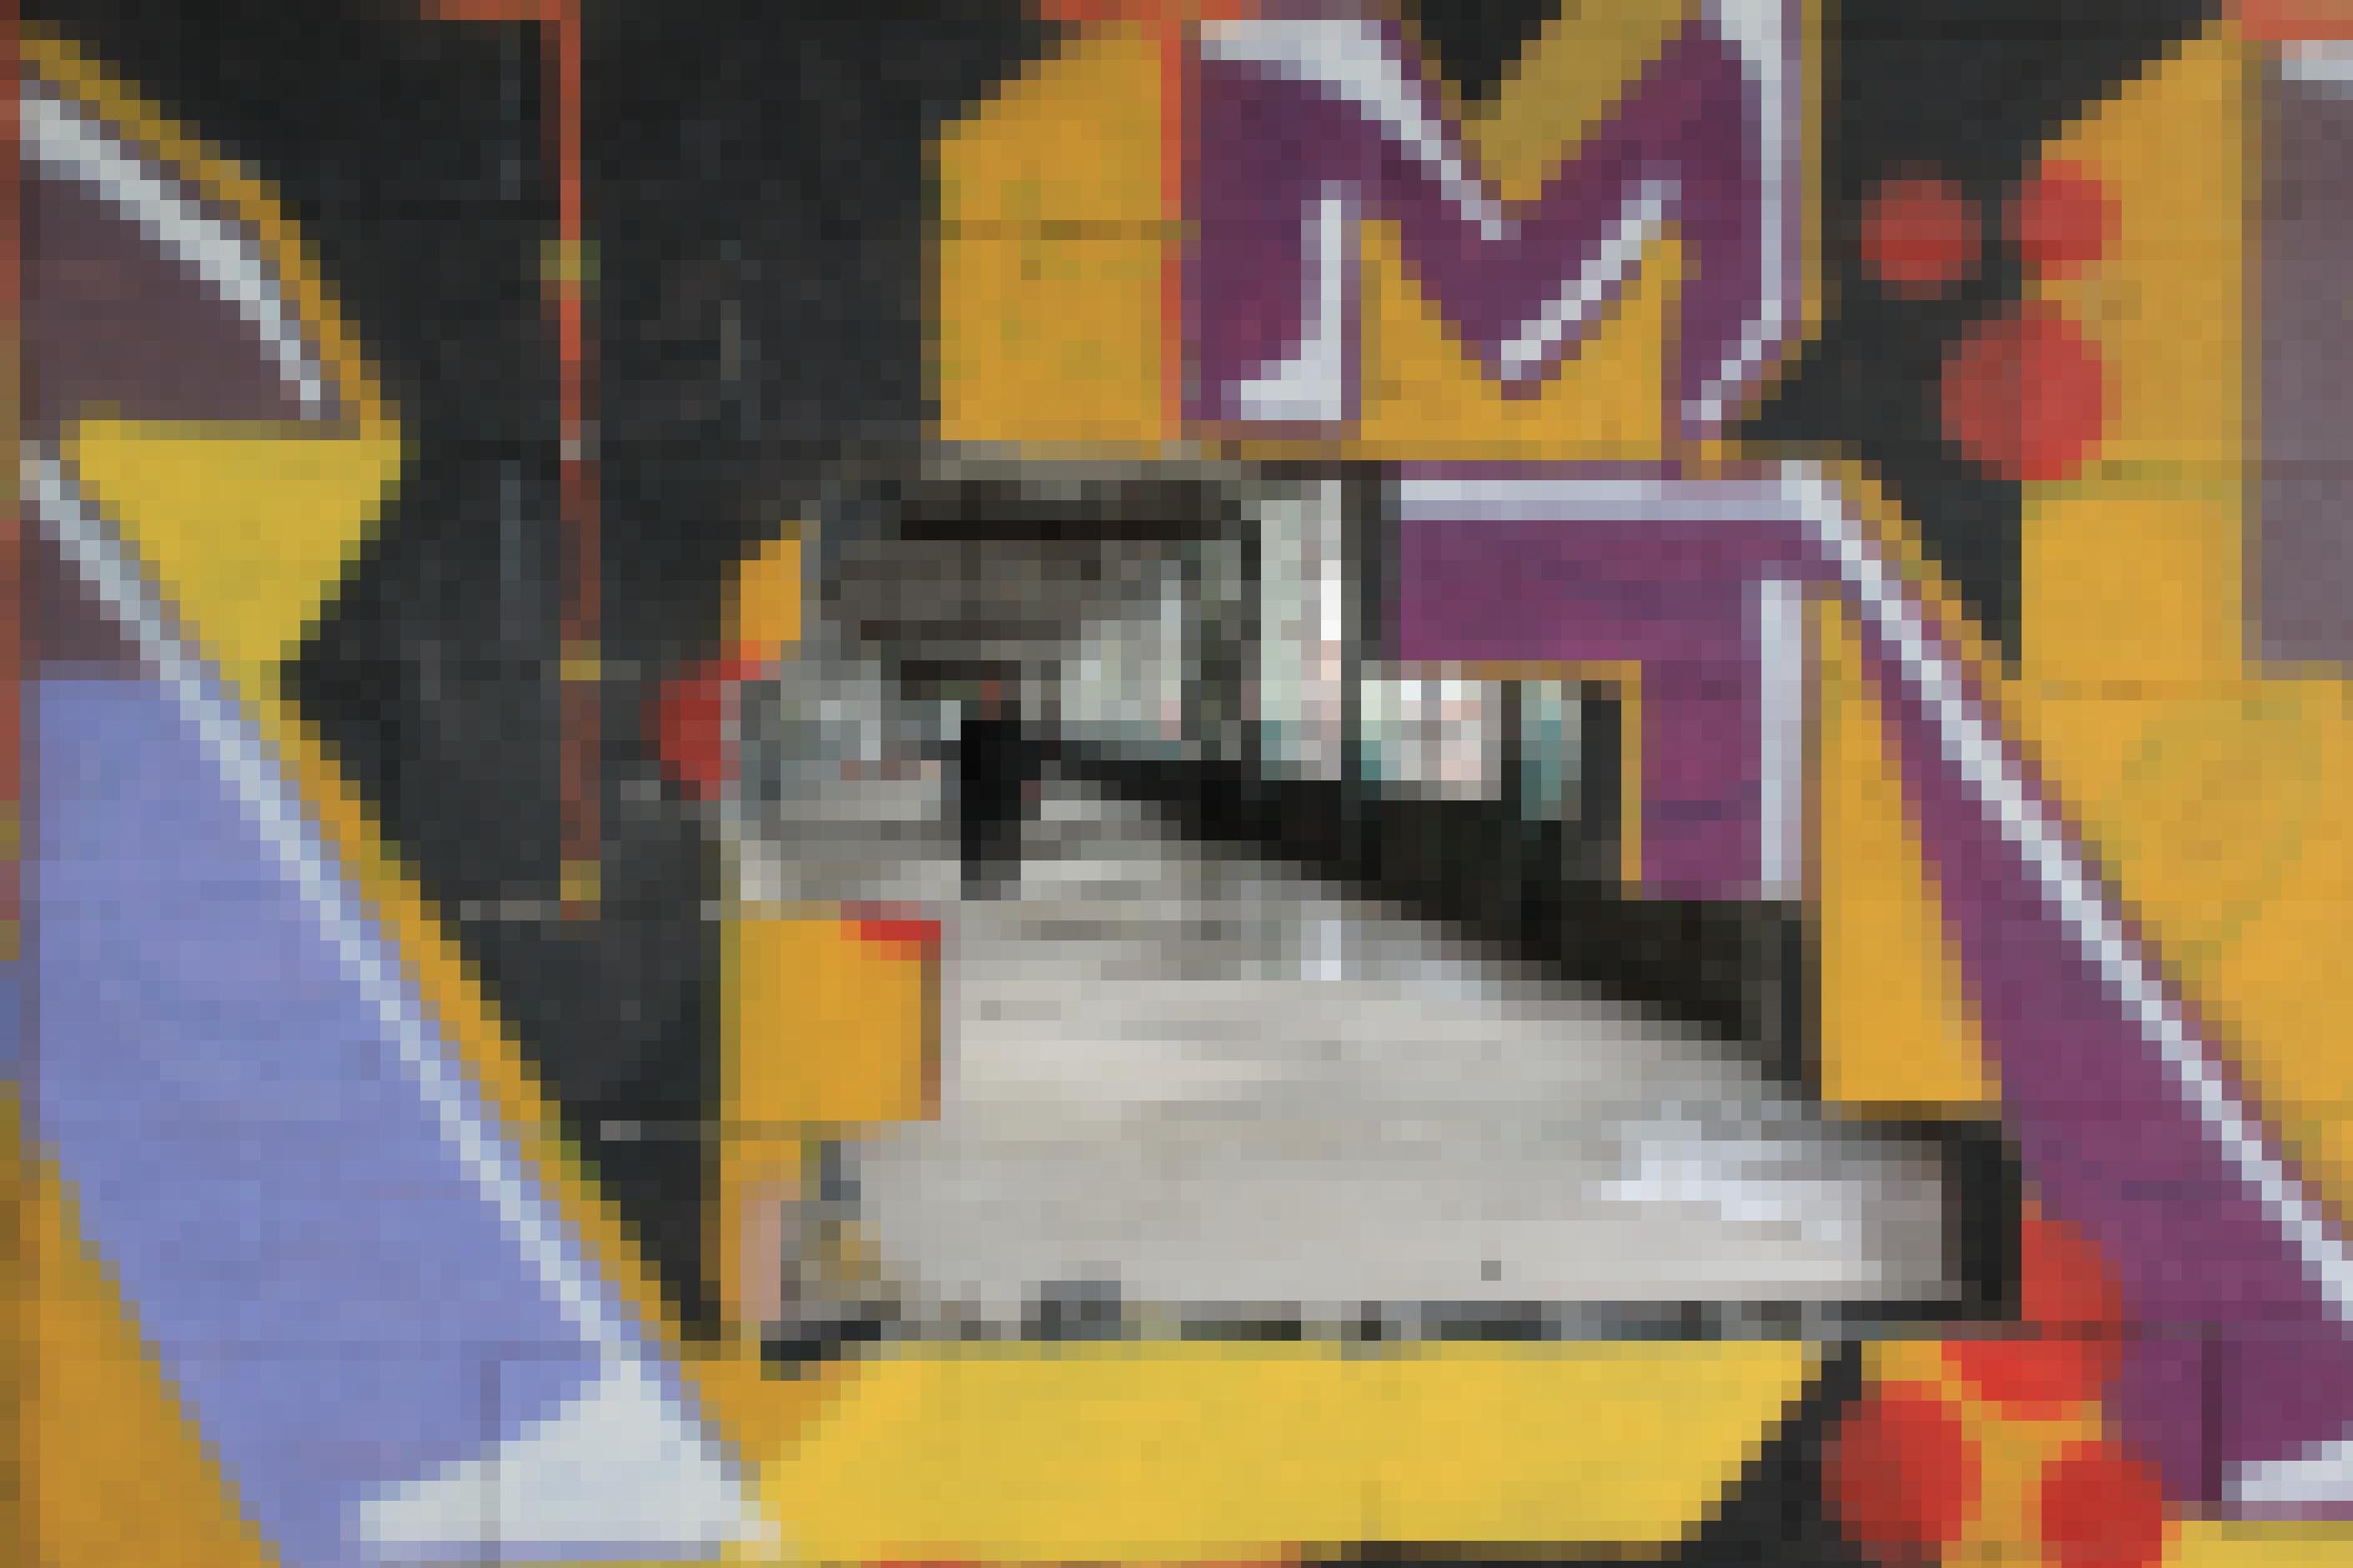 Eine mit Graffiti versehene Wand mit einem Loch in der Mitte. Hinter dem Loch ist eine leer stehende Fabrikhalle zu sehen, in der ein Mann mit Kamera in der Hand steht.